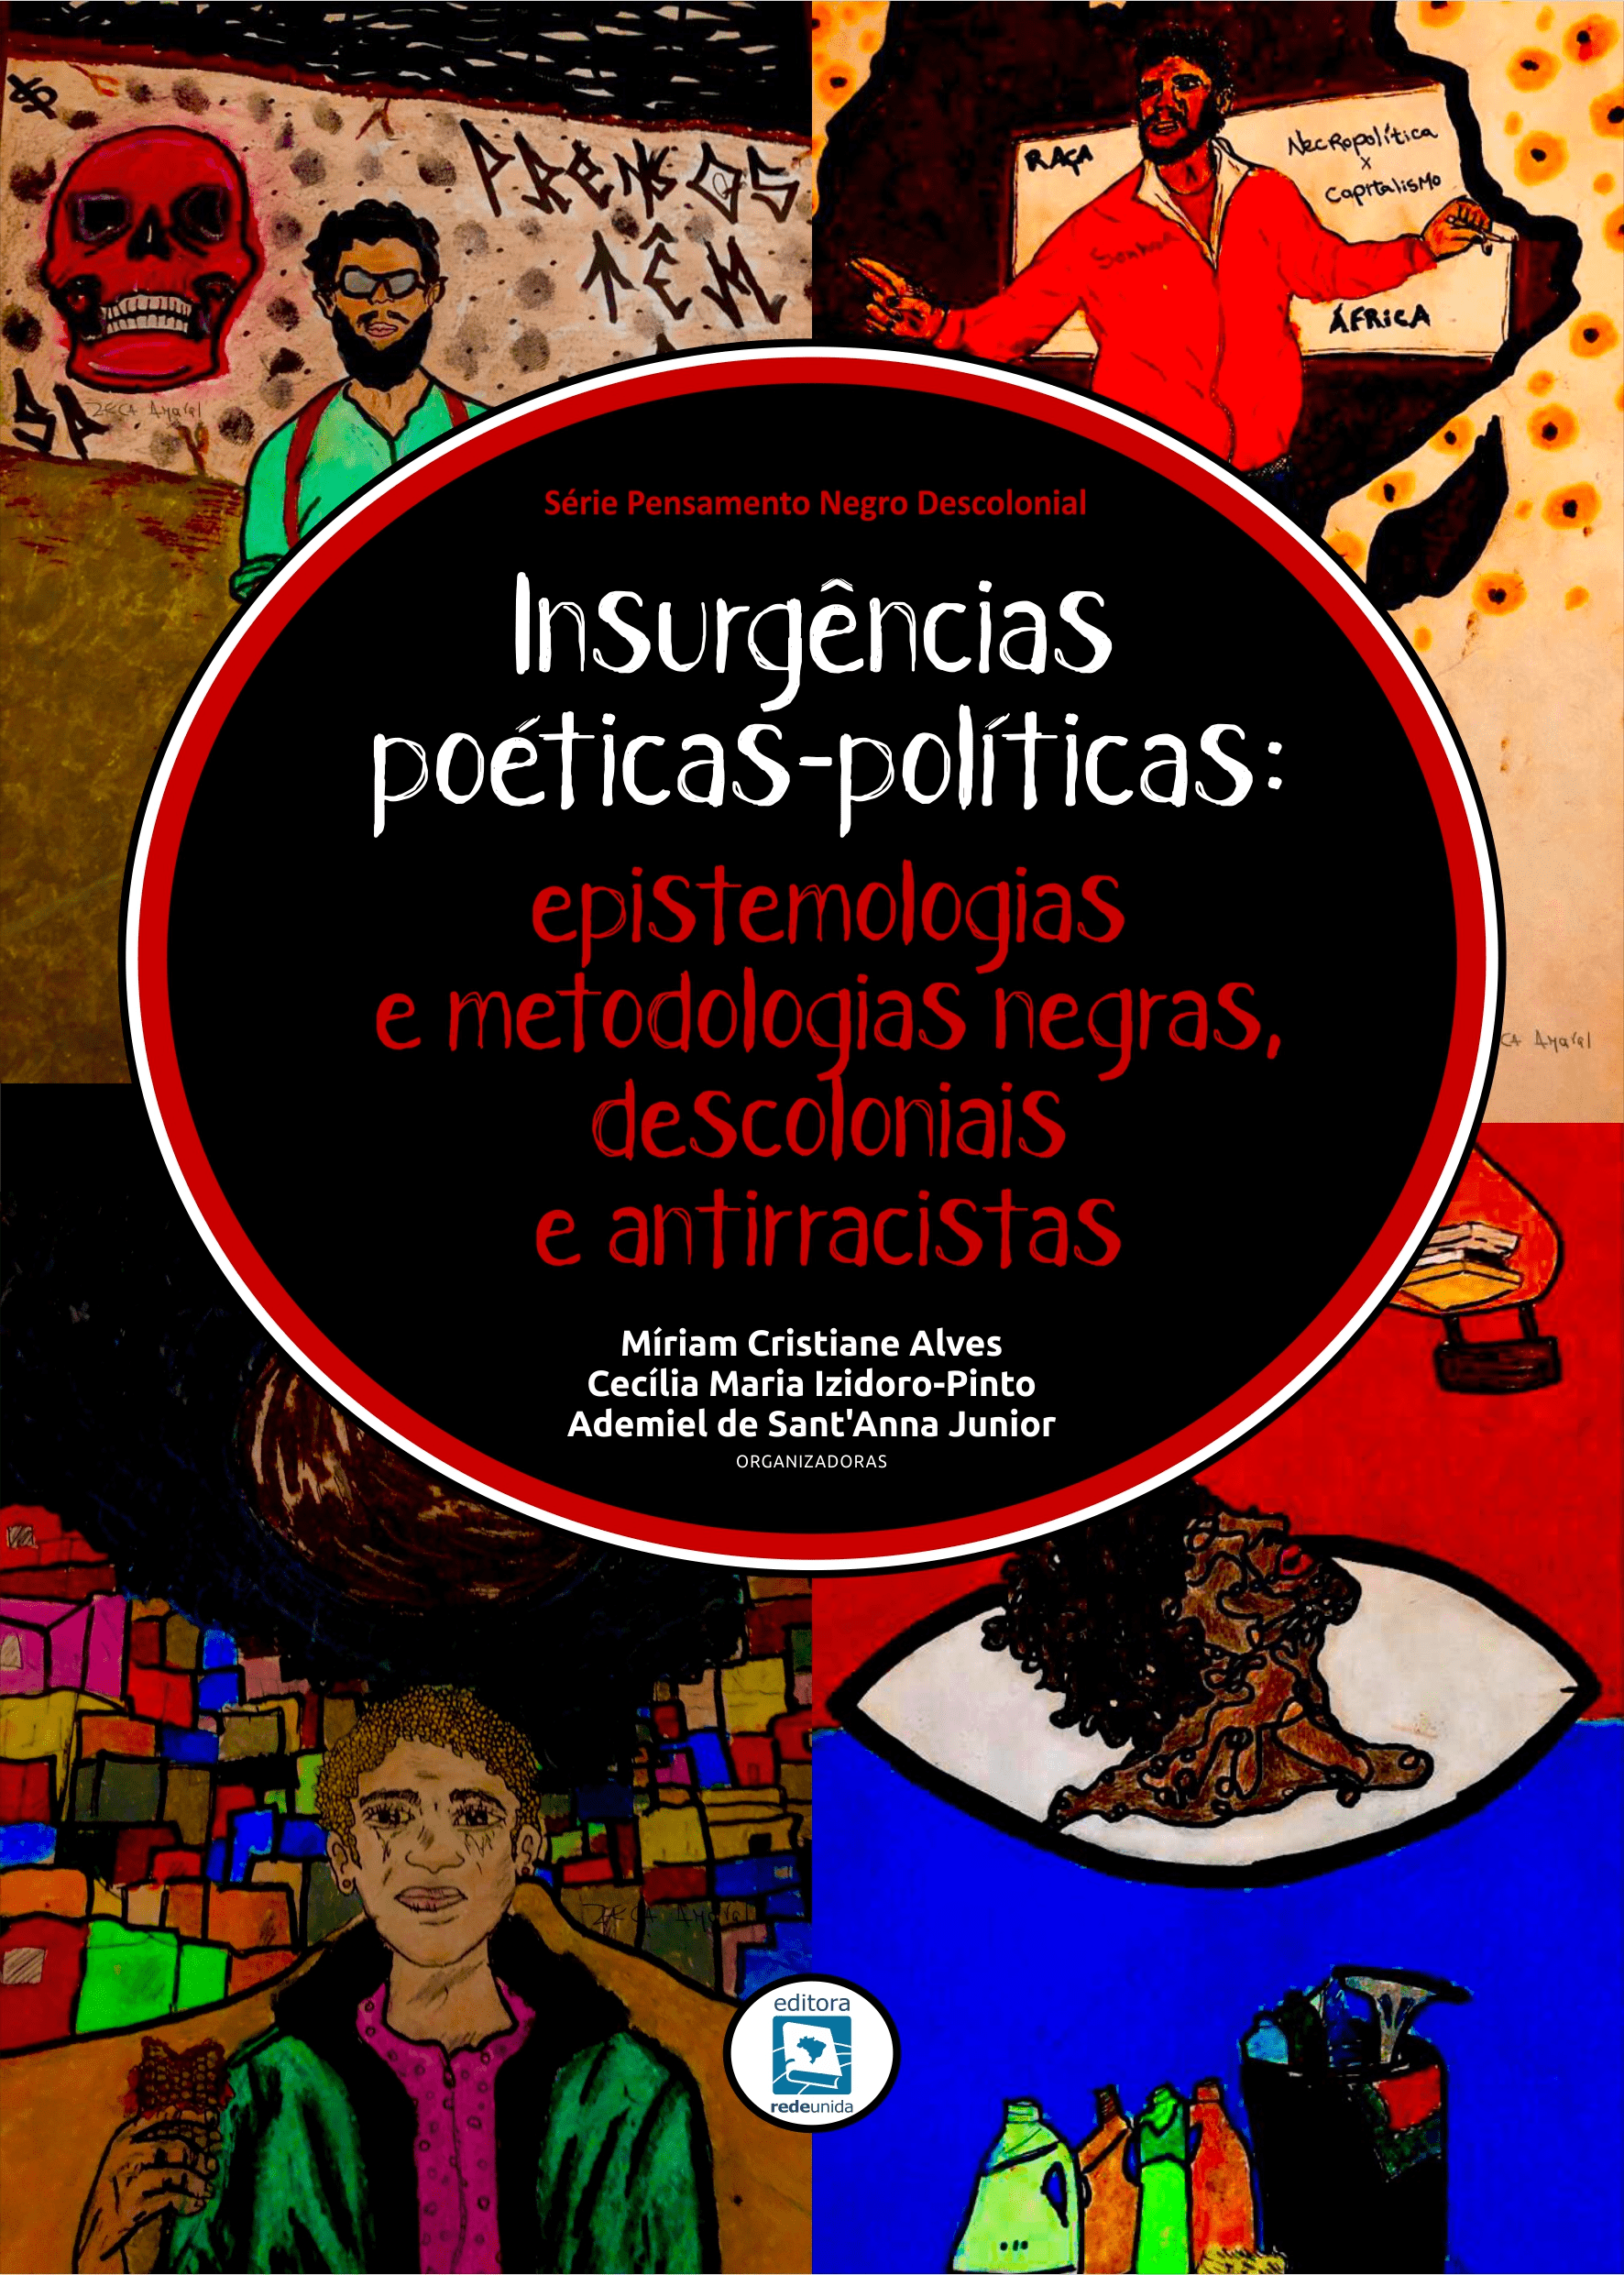 Insurgências Poéticas-Políticas: epistemologias e metodologias negras, descoloniais e antirracistas